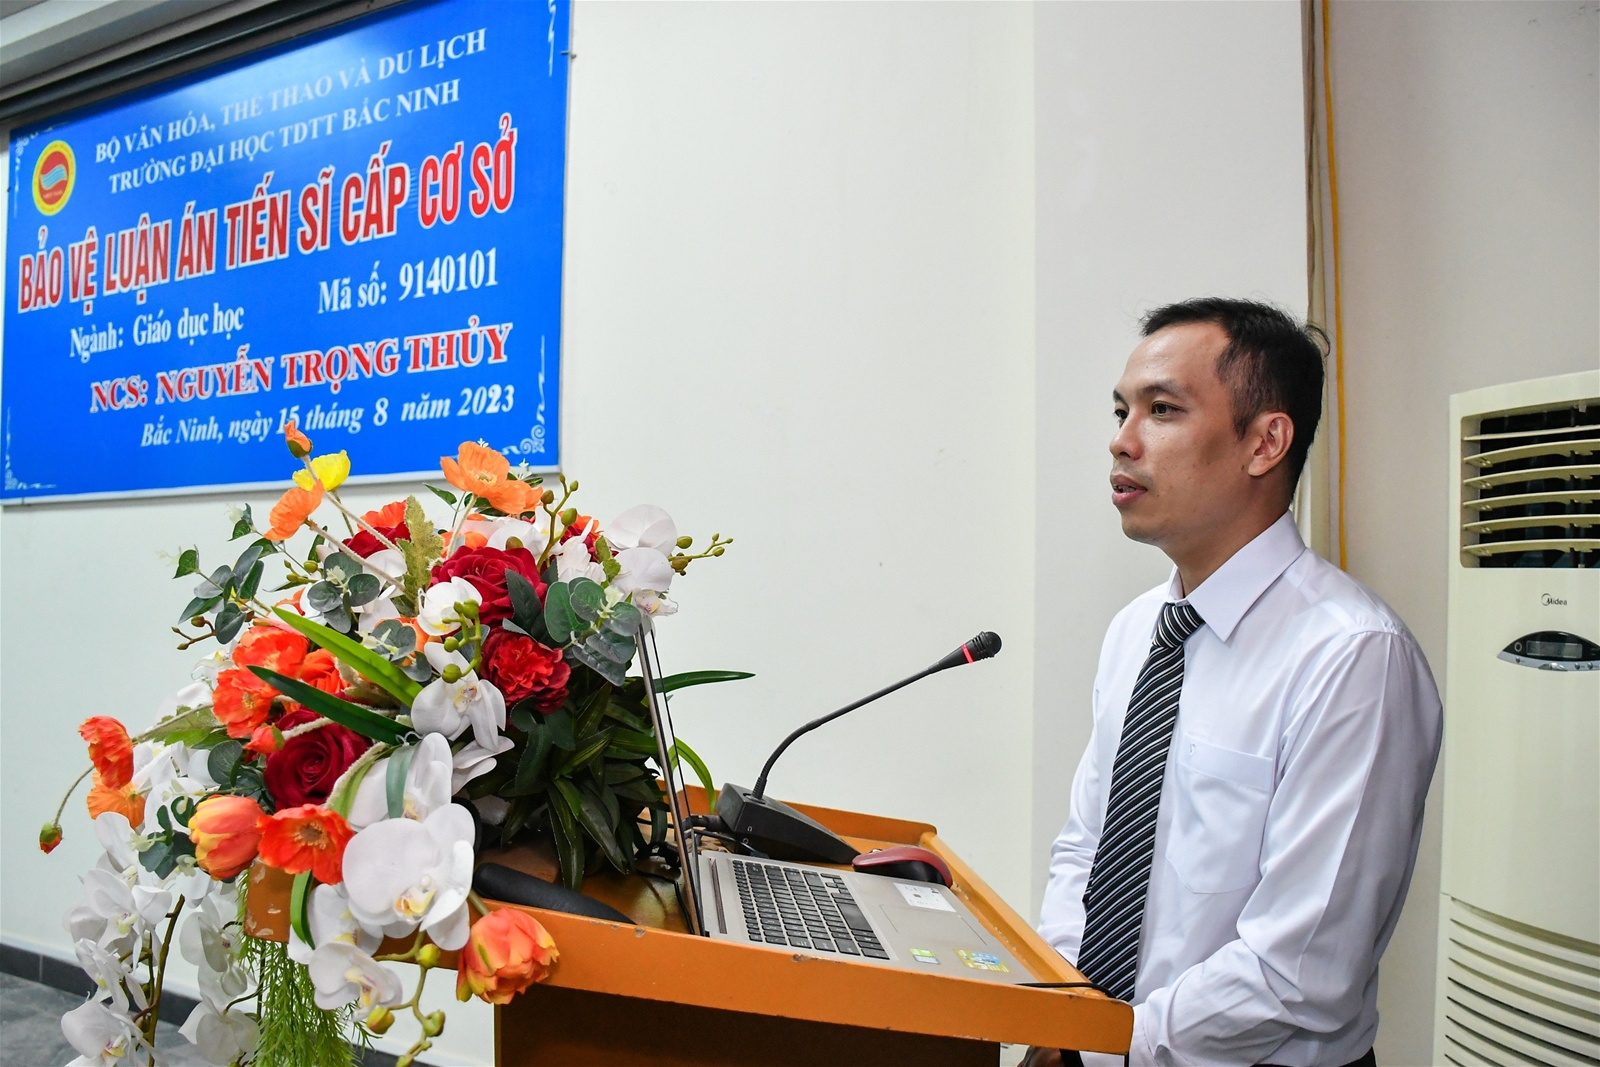 NCS Nguyễn Trọng Thủy bảo vệ thành công luận án tiến sĩ cấp cơ sở